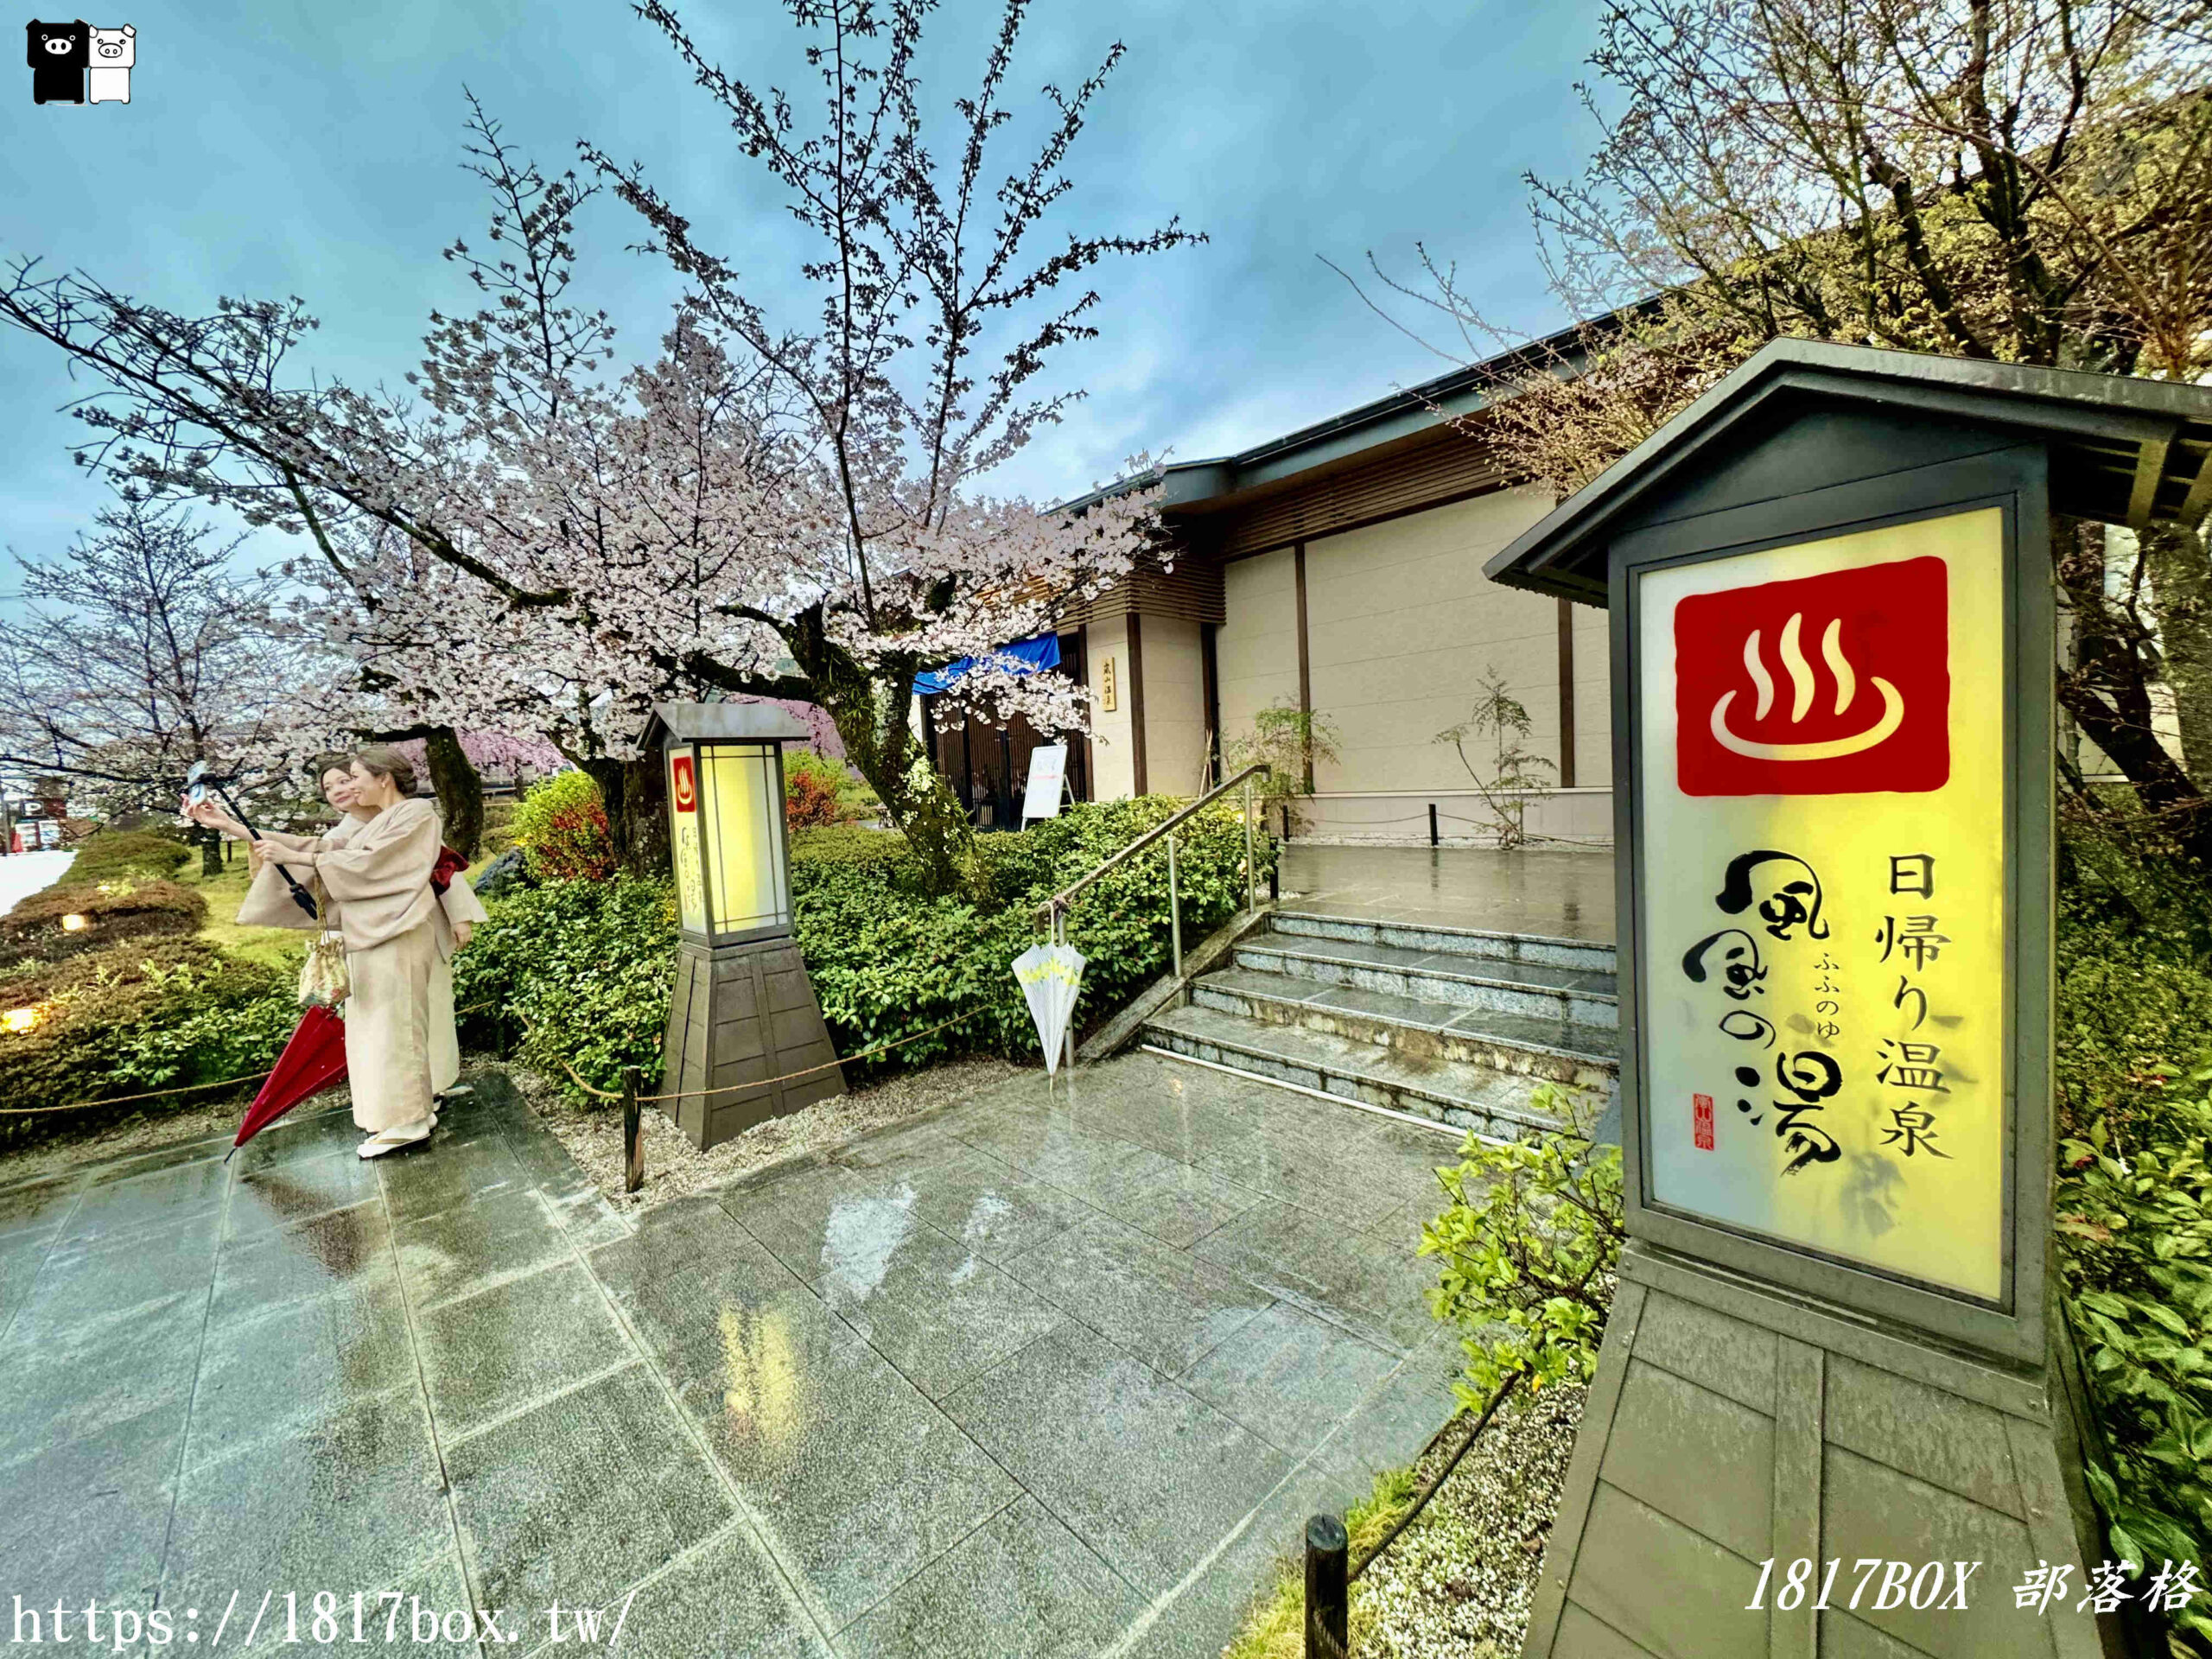 【京都景點】京都嵐山温泉。風風之湯。湯浴處。櫻花季可以賞櫻 @1817BOX部落格